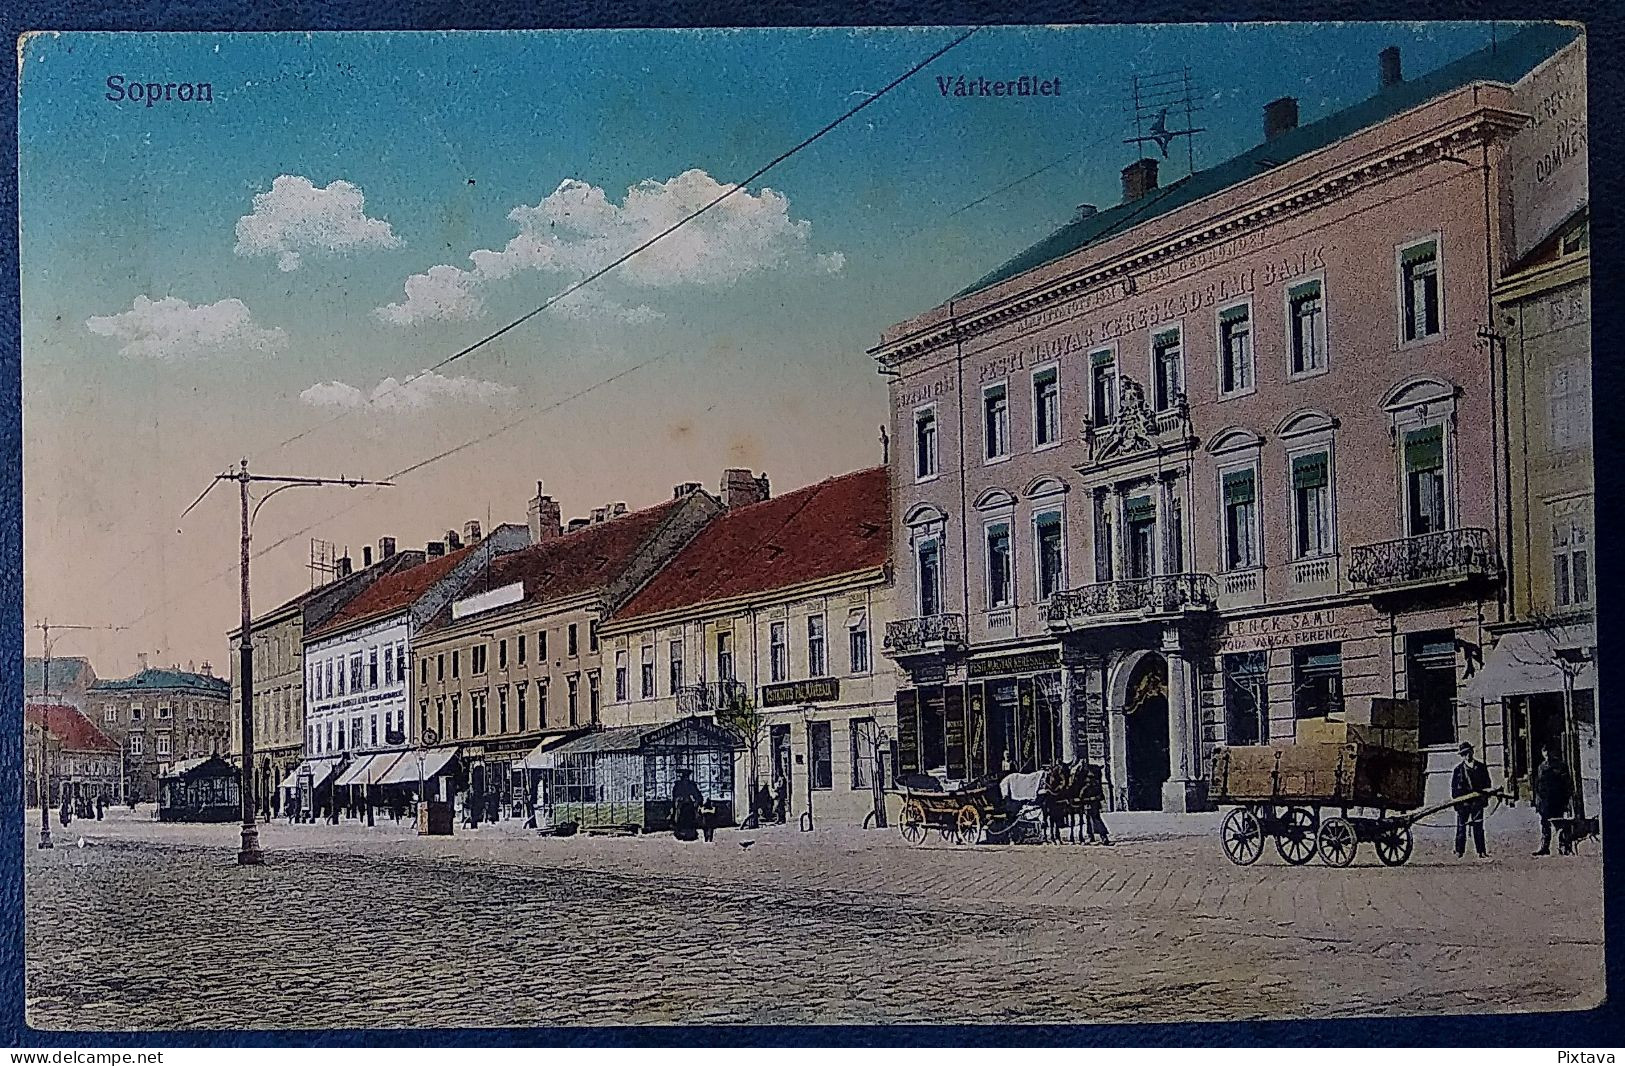 Hungary / Sopron / Várkerület / Uzletek / 1915 - Hungary